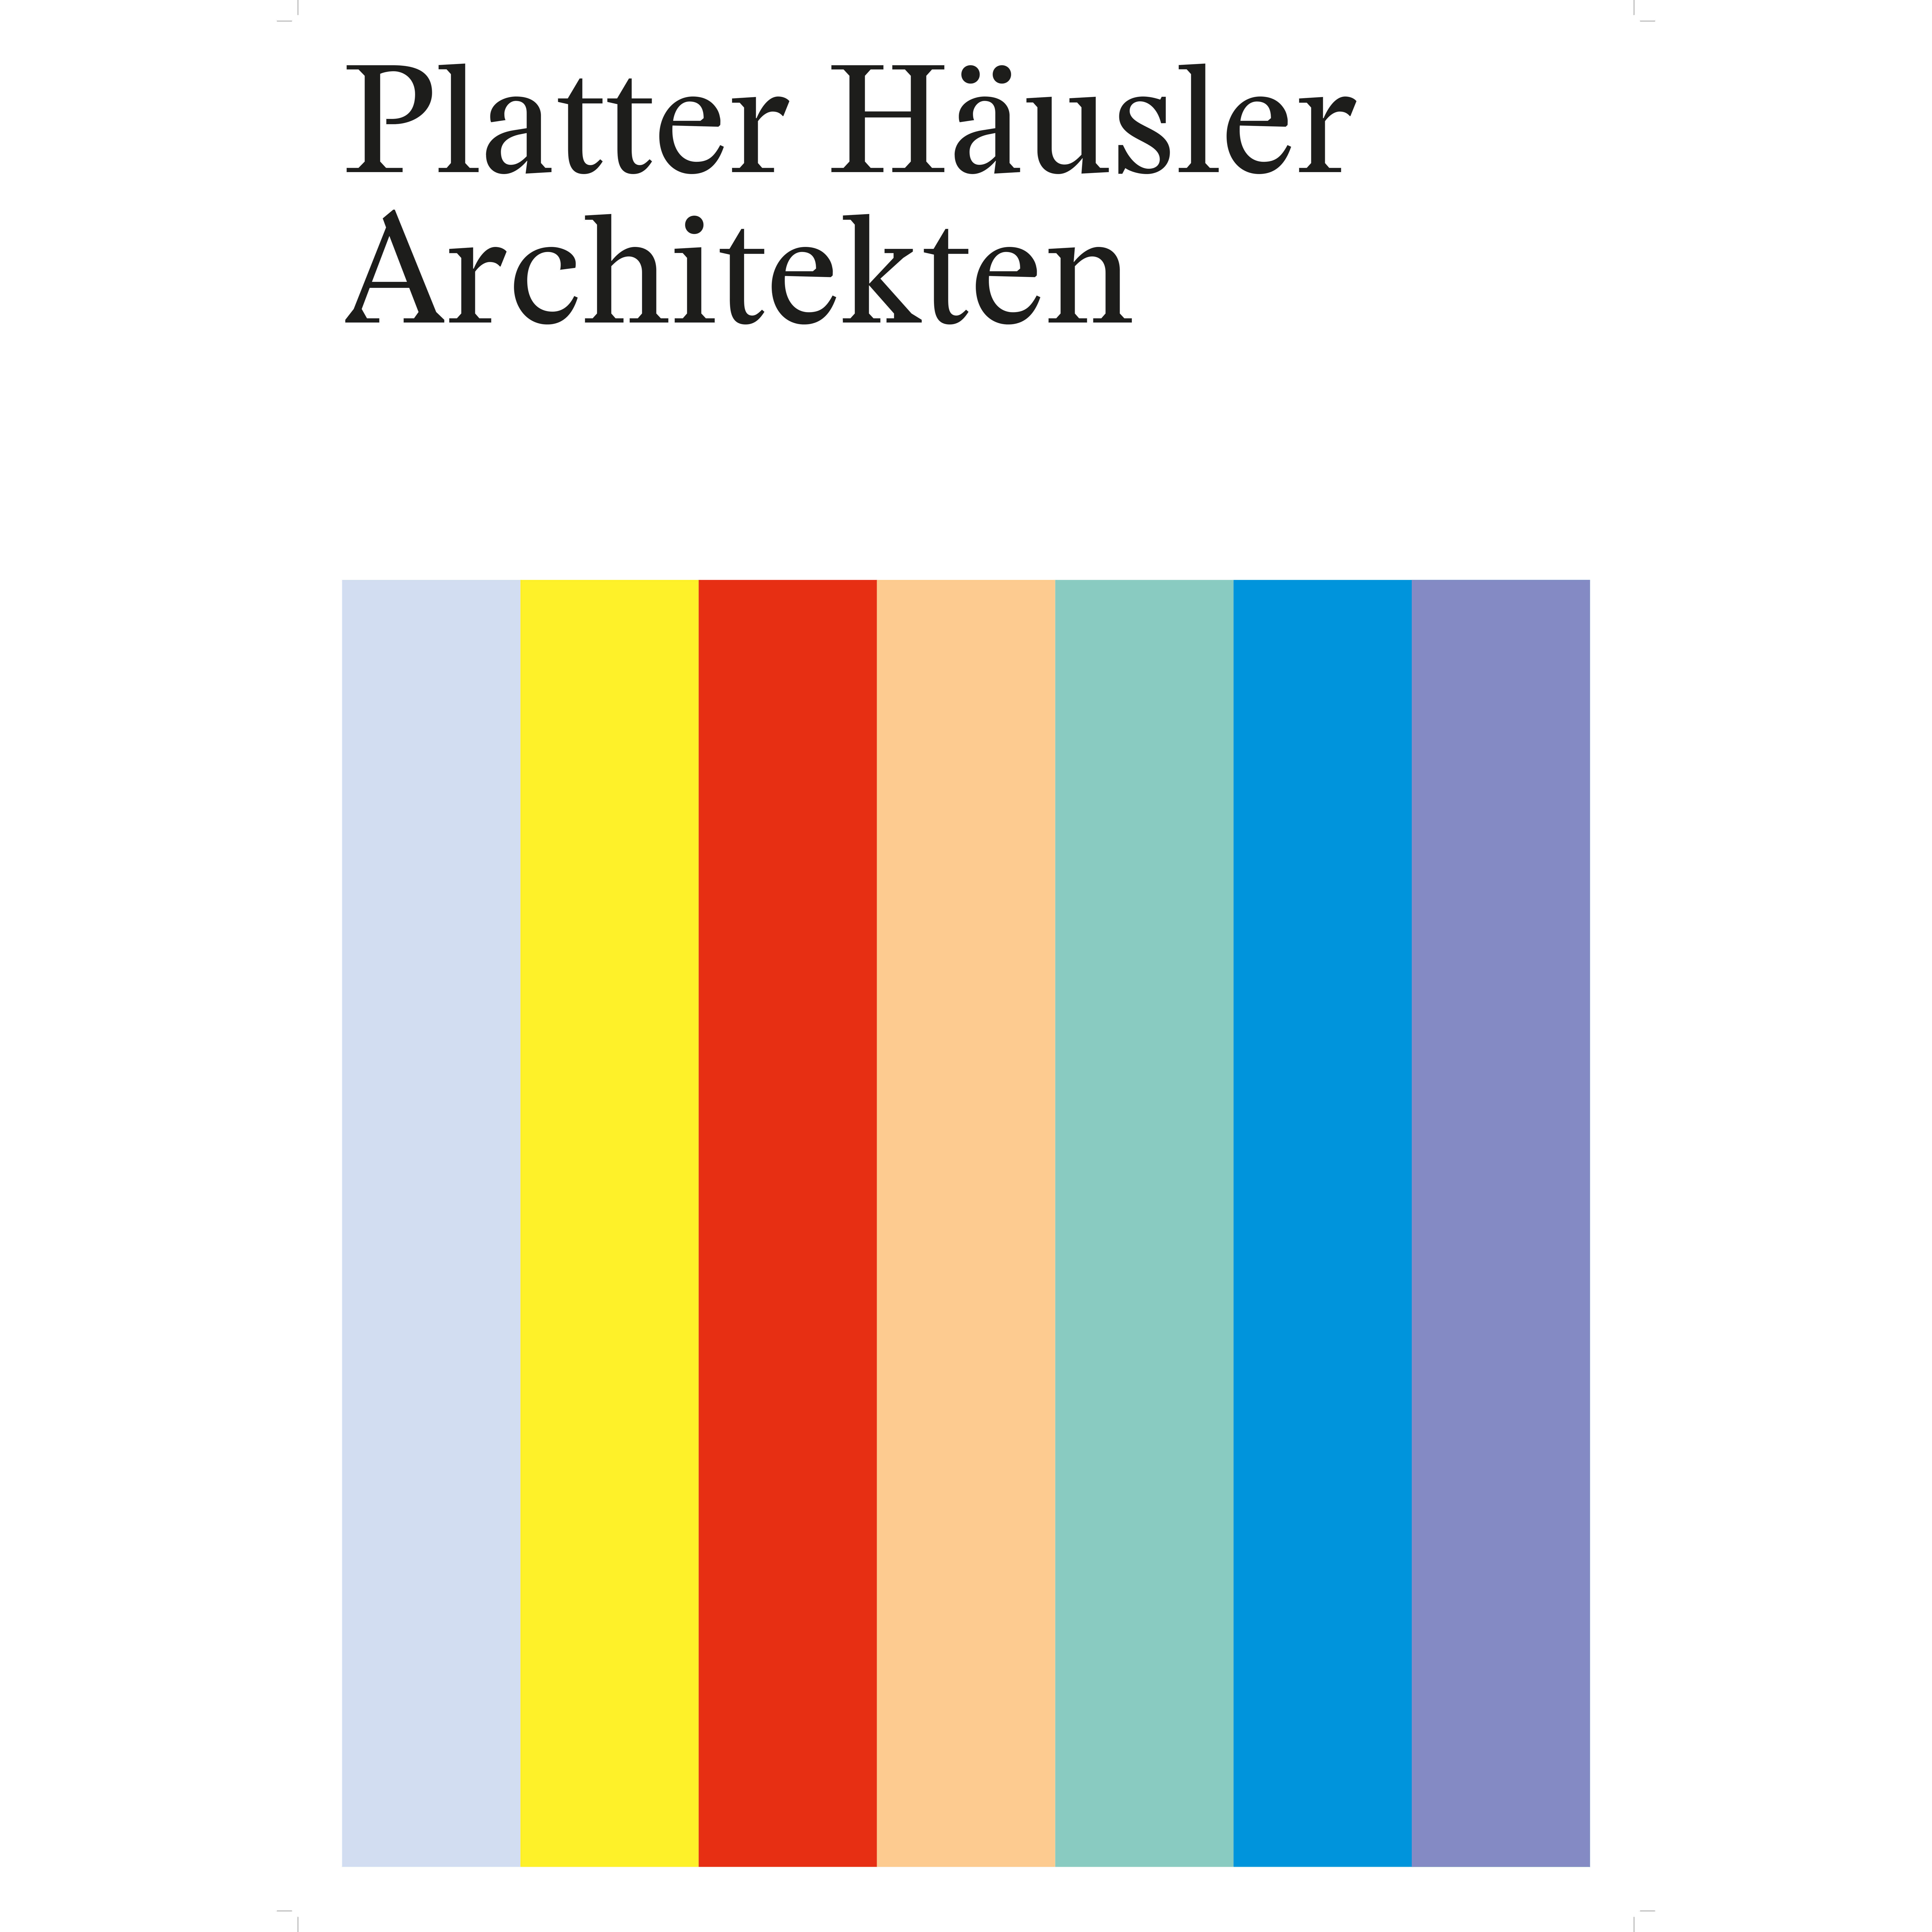 Platter Häusler Architekten - Arch. DI Bettina Platter - Arch. DI Dominik Häusler